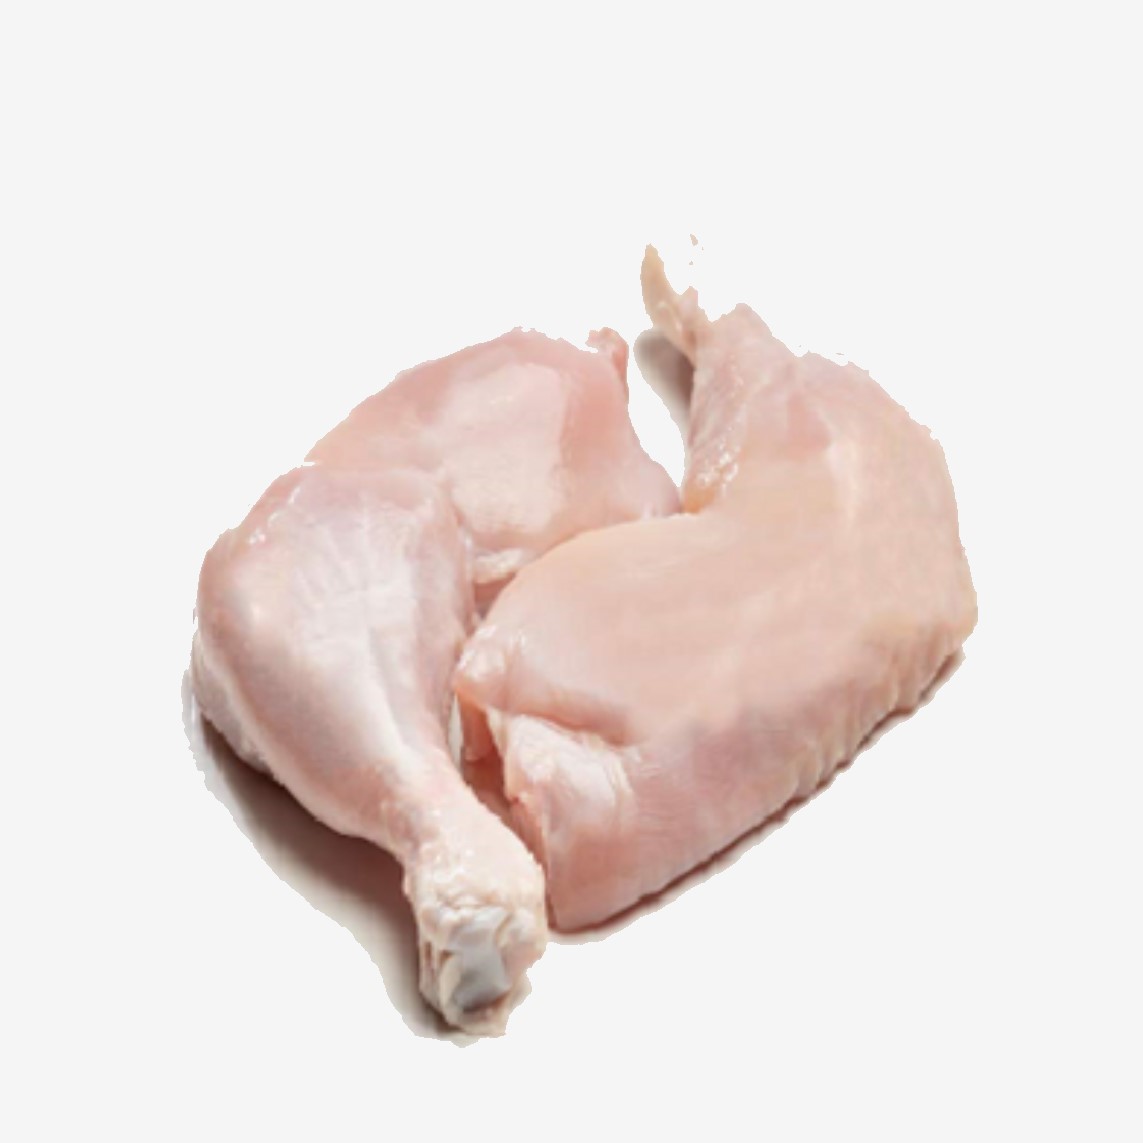 ران بدون پوست مرغ عرضه شده در فروشگاه اینترنتی گل میوه